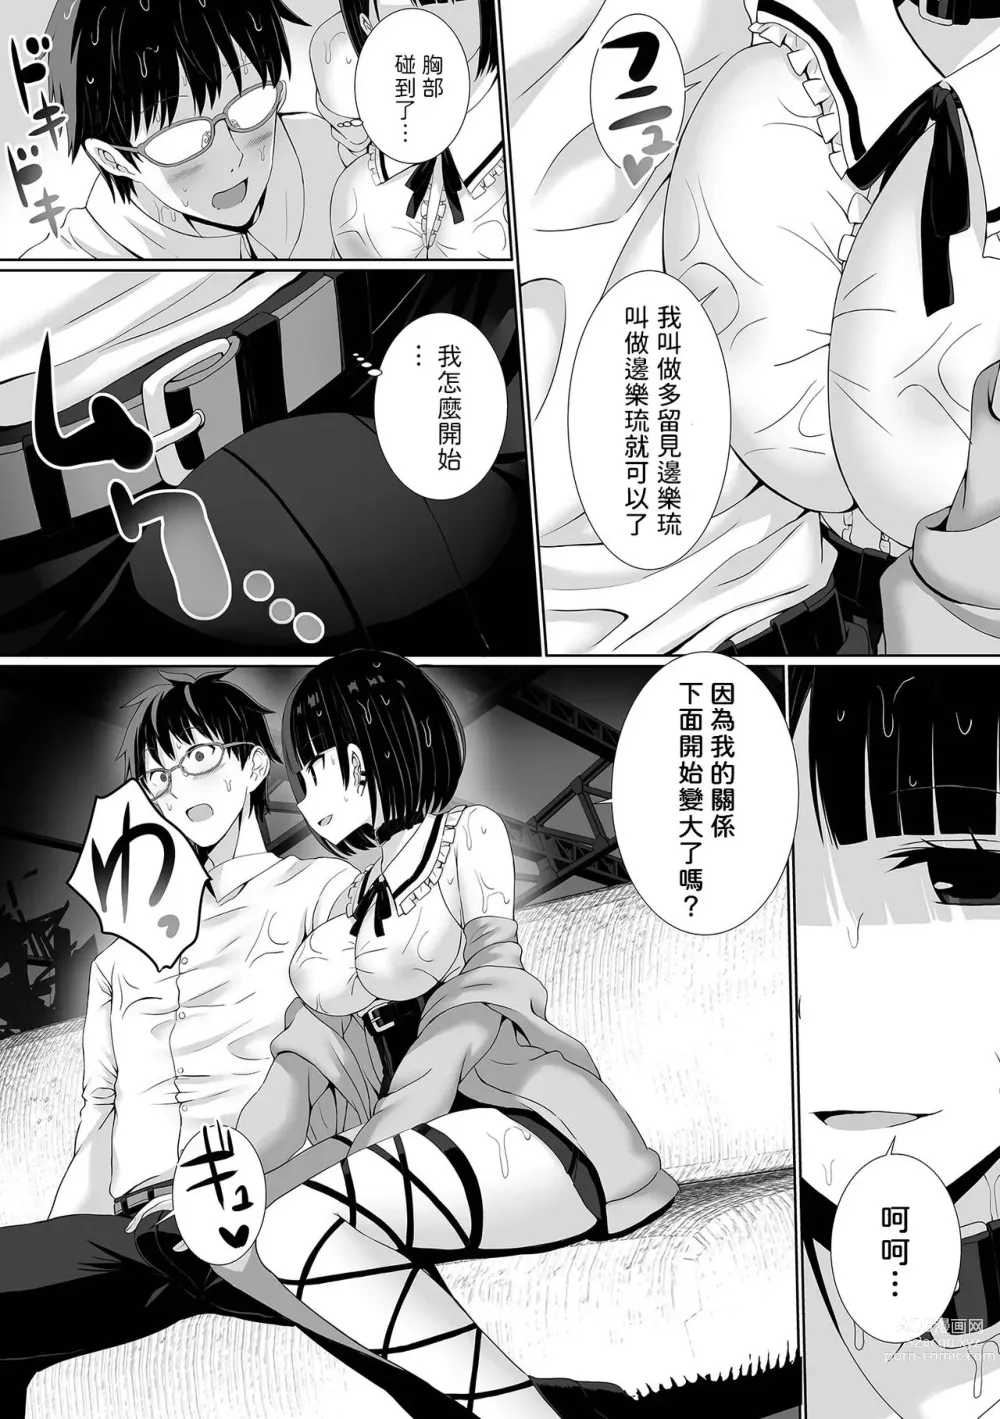 Page 4 of manga MenHeal Yuurei no Kanojo ga Dekiru made